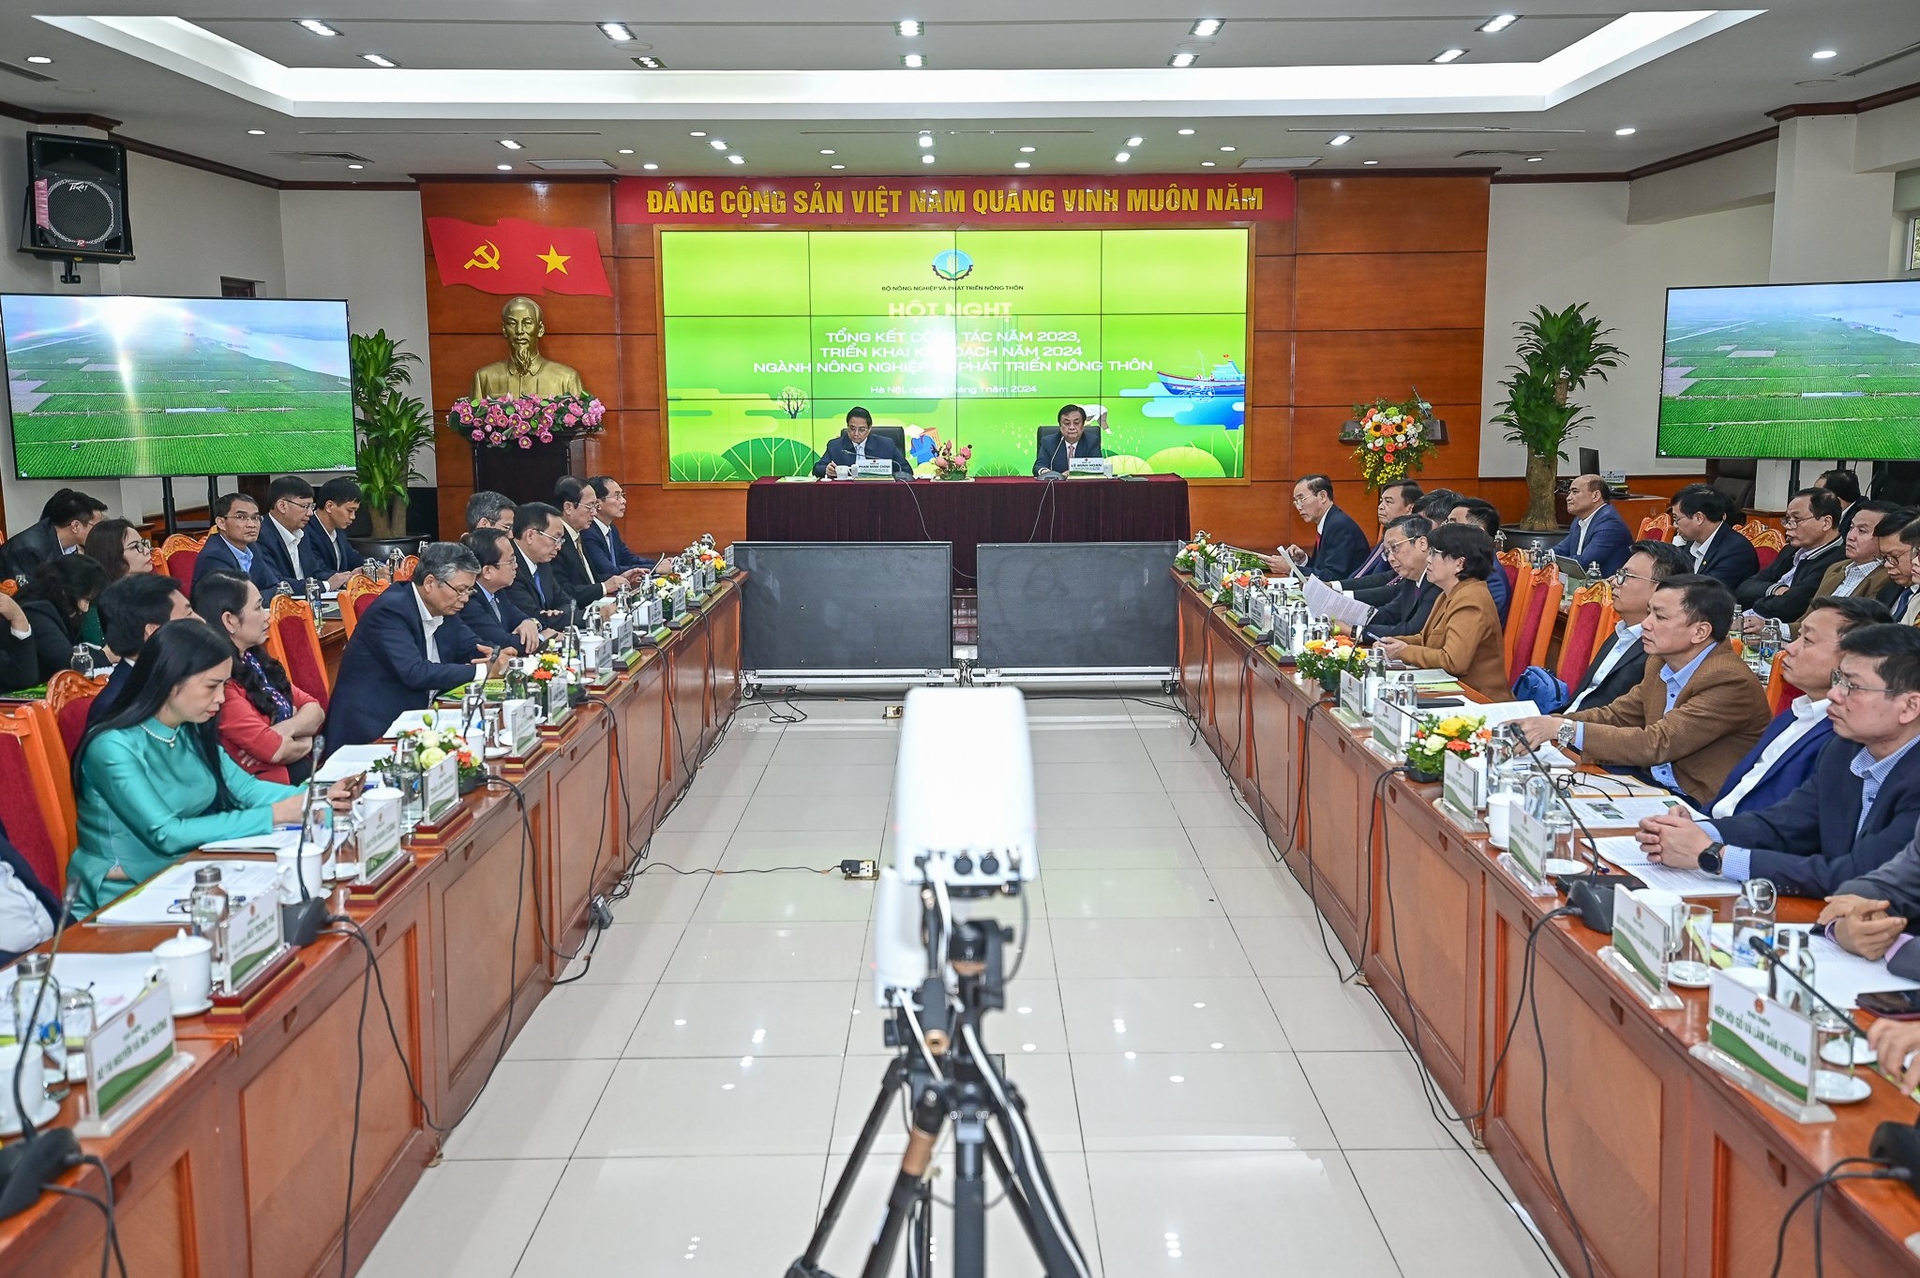 Thủ tướng Phạm Minh Chính, Bộ trưởng Bộ NN-PTNT Lê Minh Hoan cùng các đại biểu xem phim tổng kết ngành nông nghiệp và phát triển nông thôn.